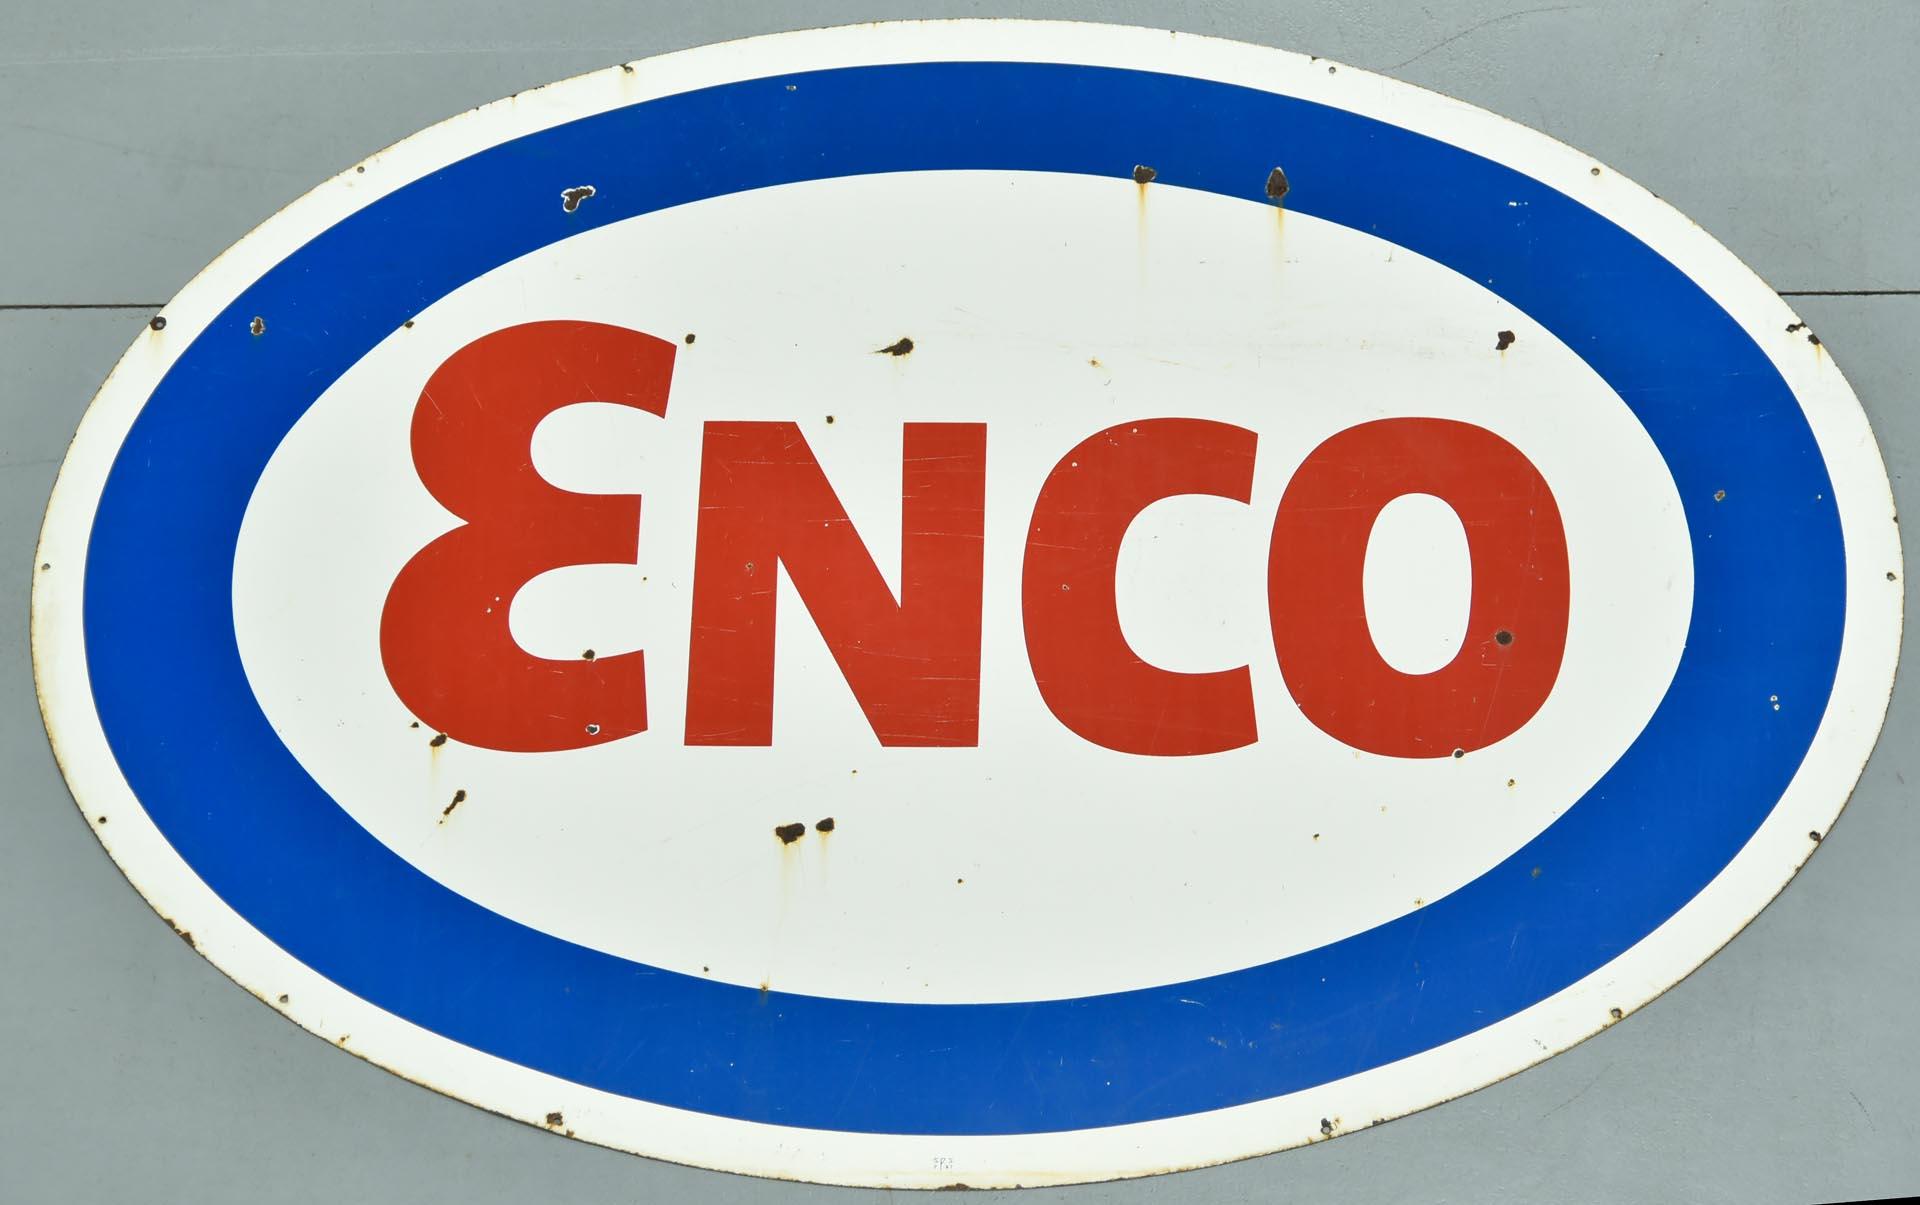 SSP ENCO Oil Single-Sided Porcelain Gas Station Service Station Sign